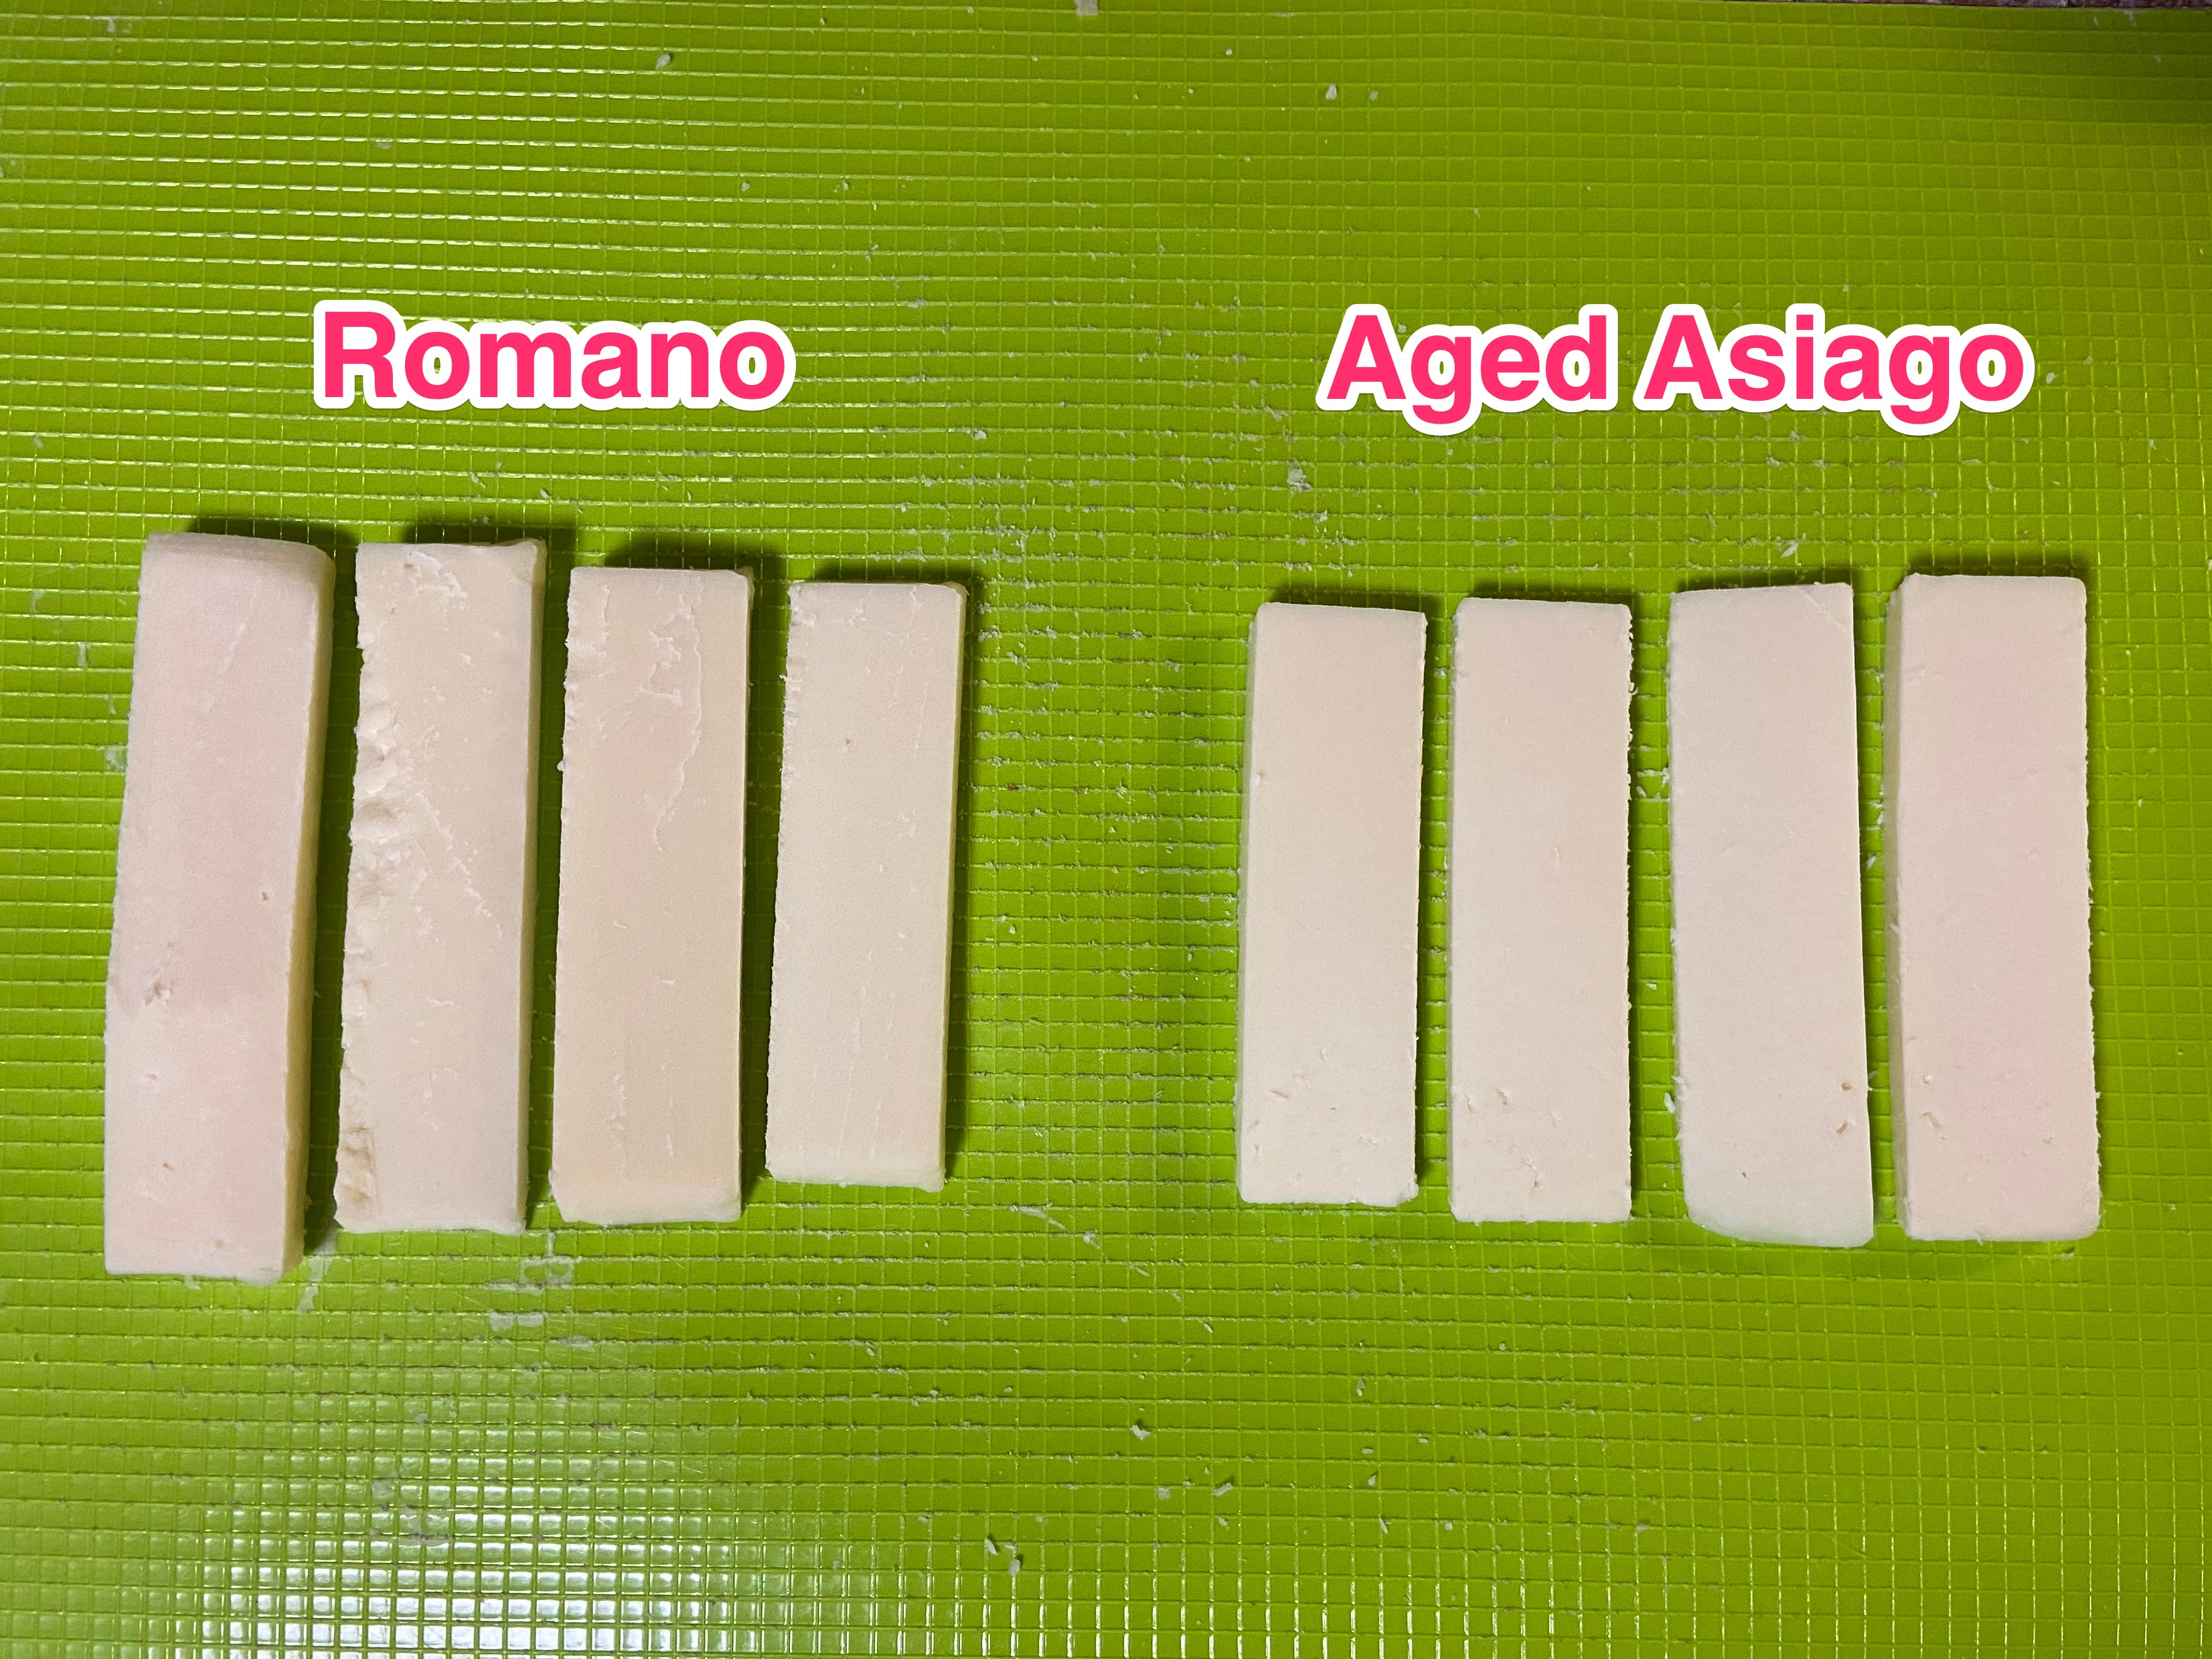 8 Käsestreifen, getrennt nach Romano- und Asiago-Stil.